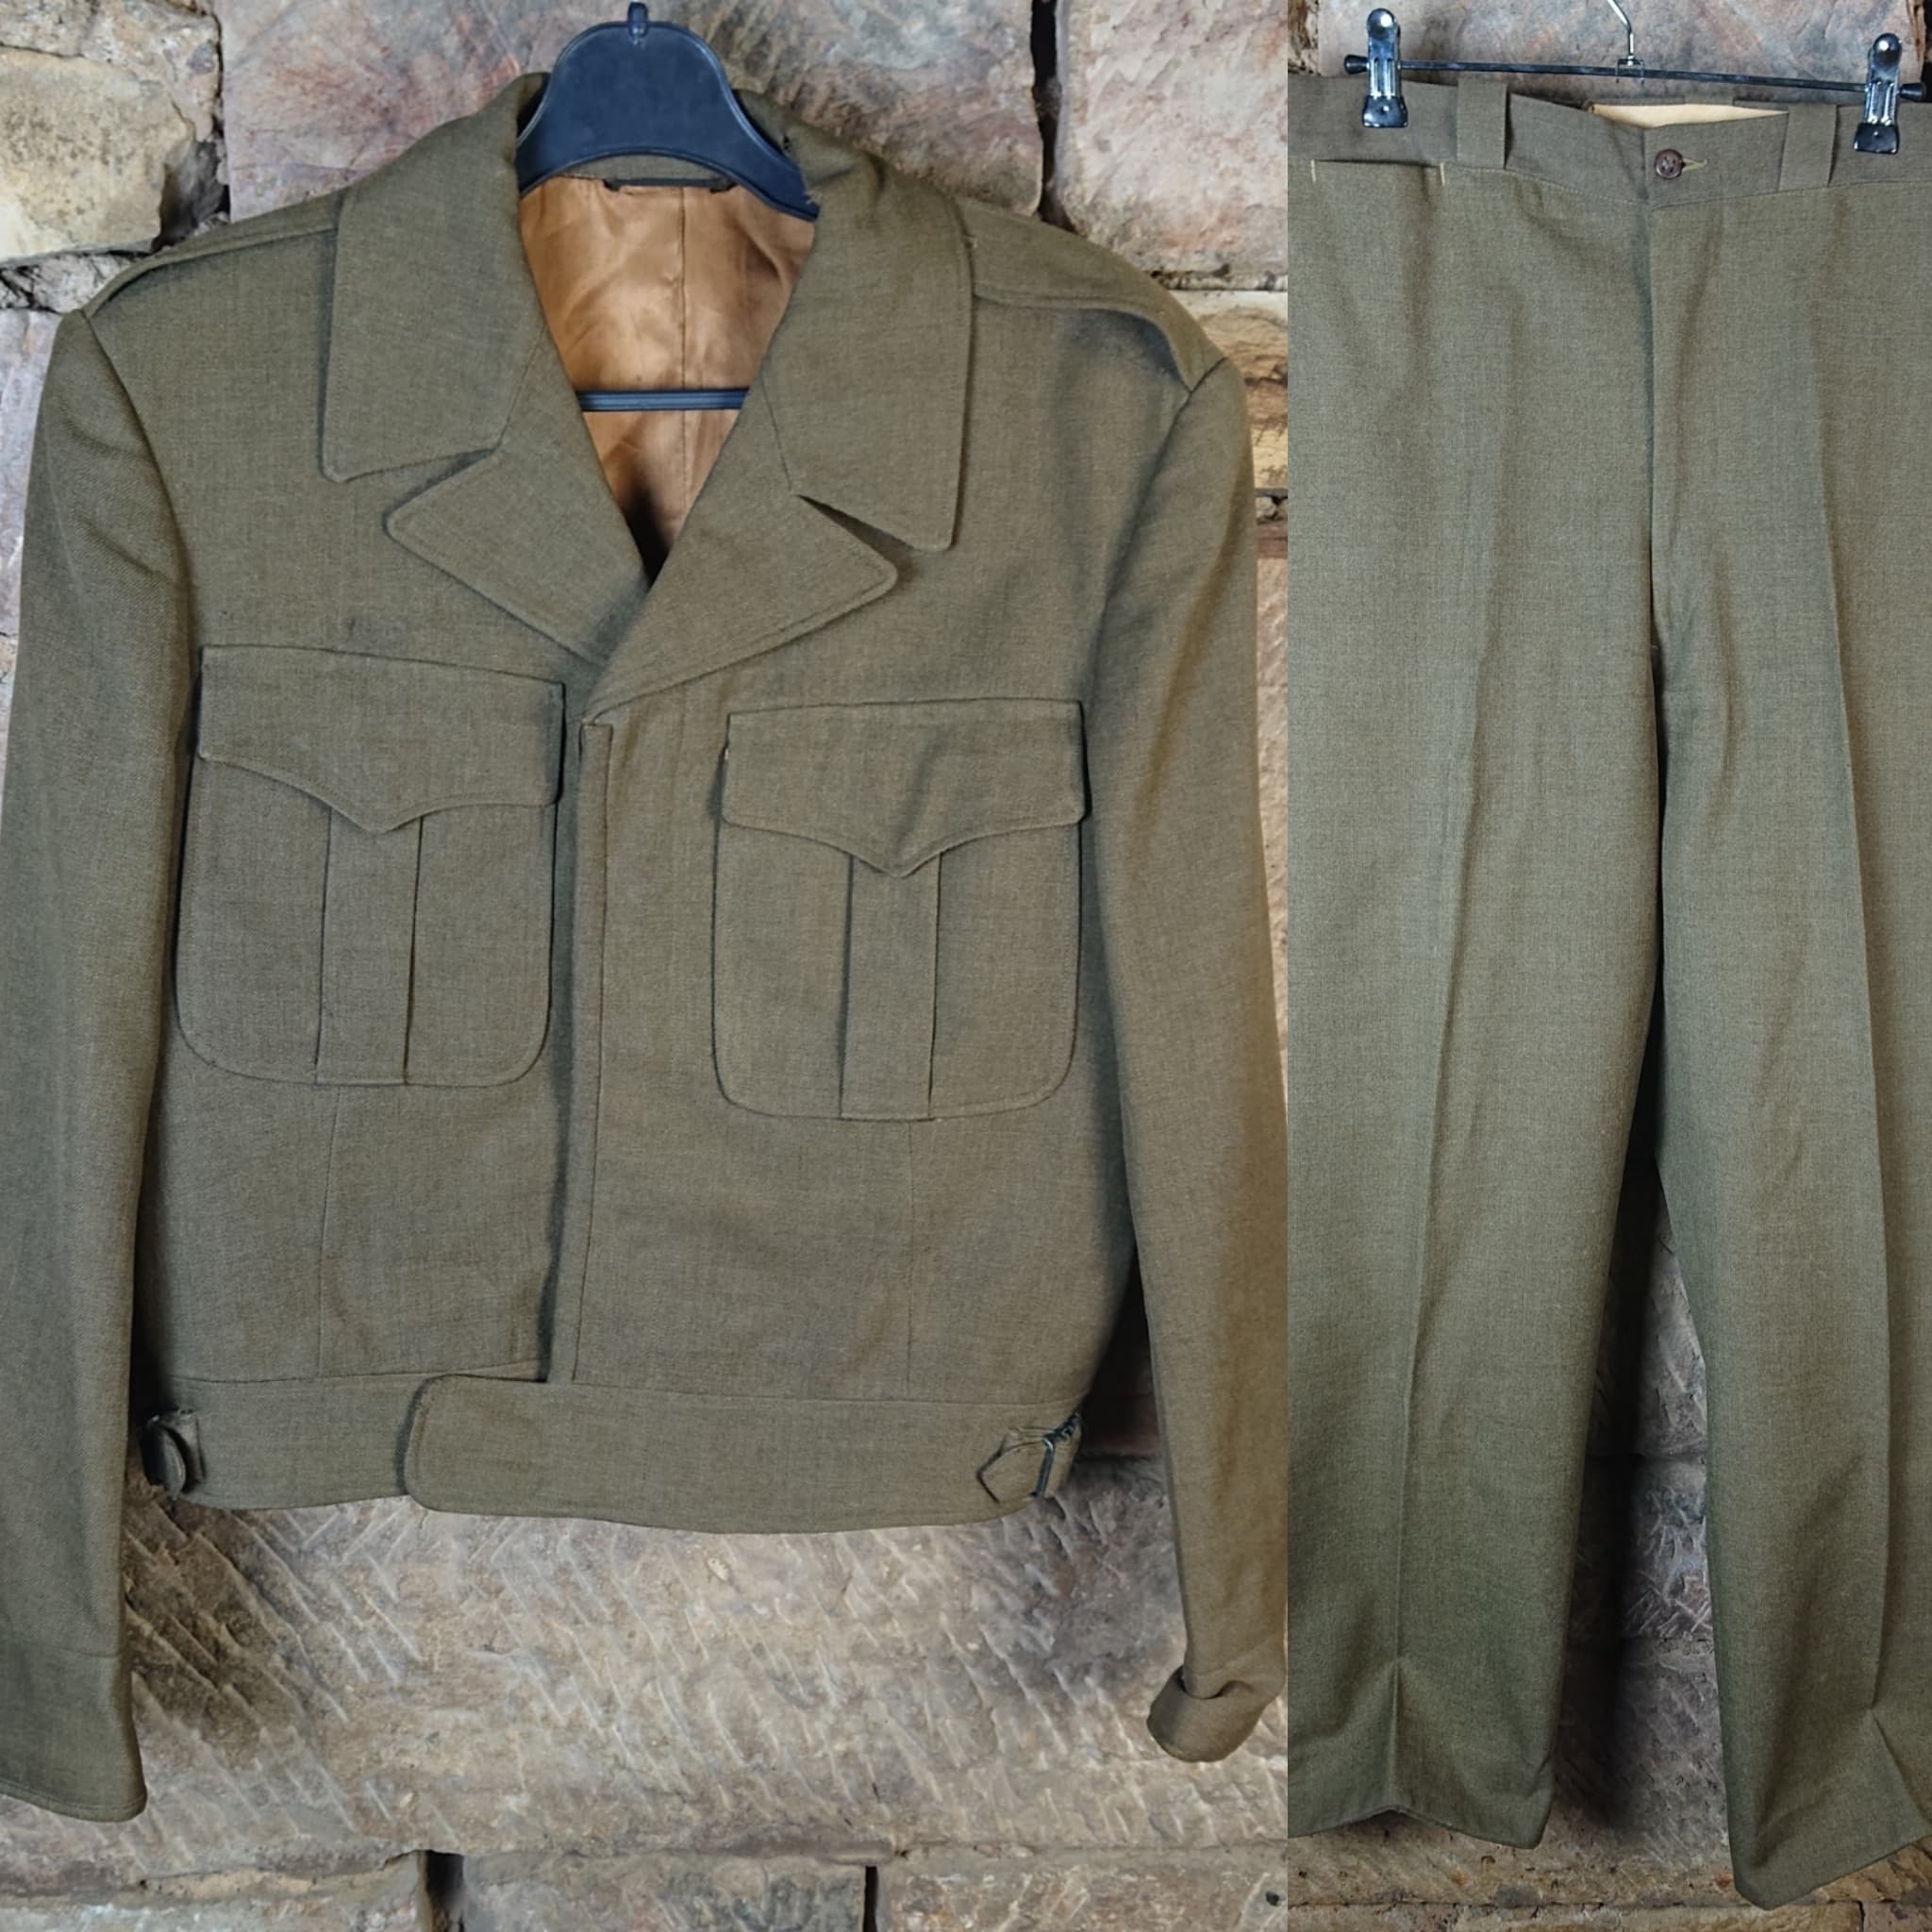 militaria : Veste IKE + Pantalon officier US / IKE jacket + US officer pants